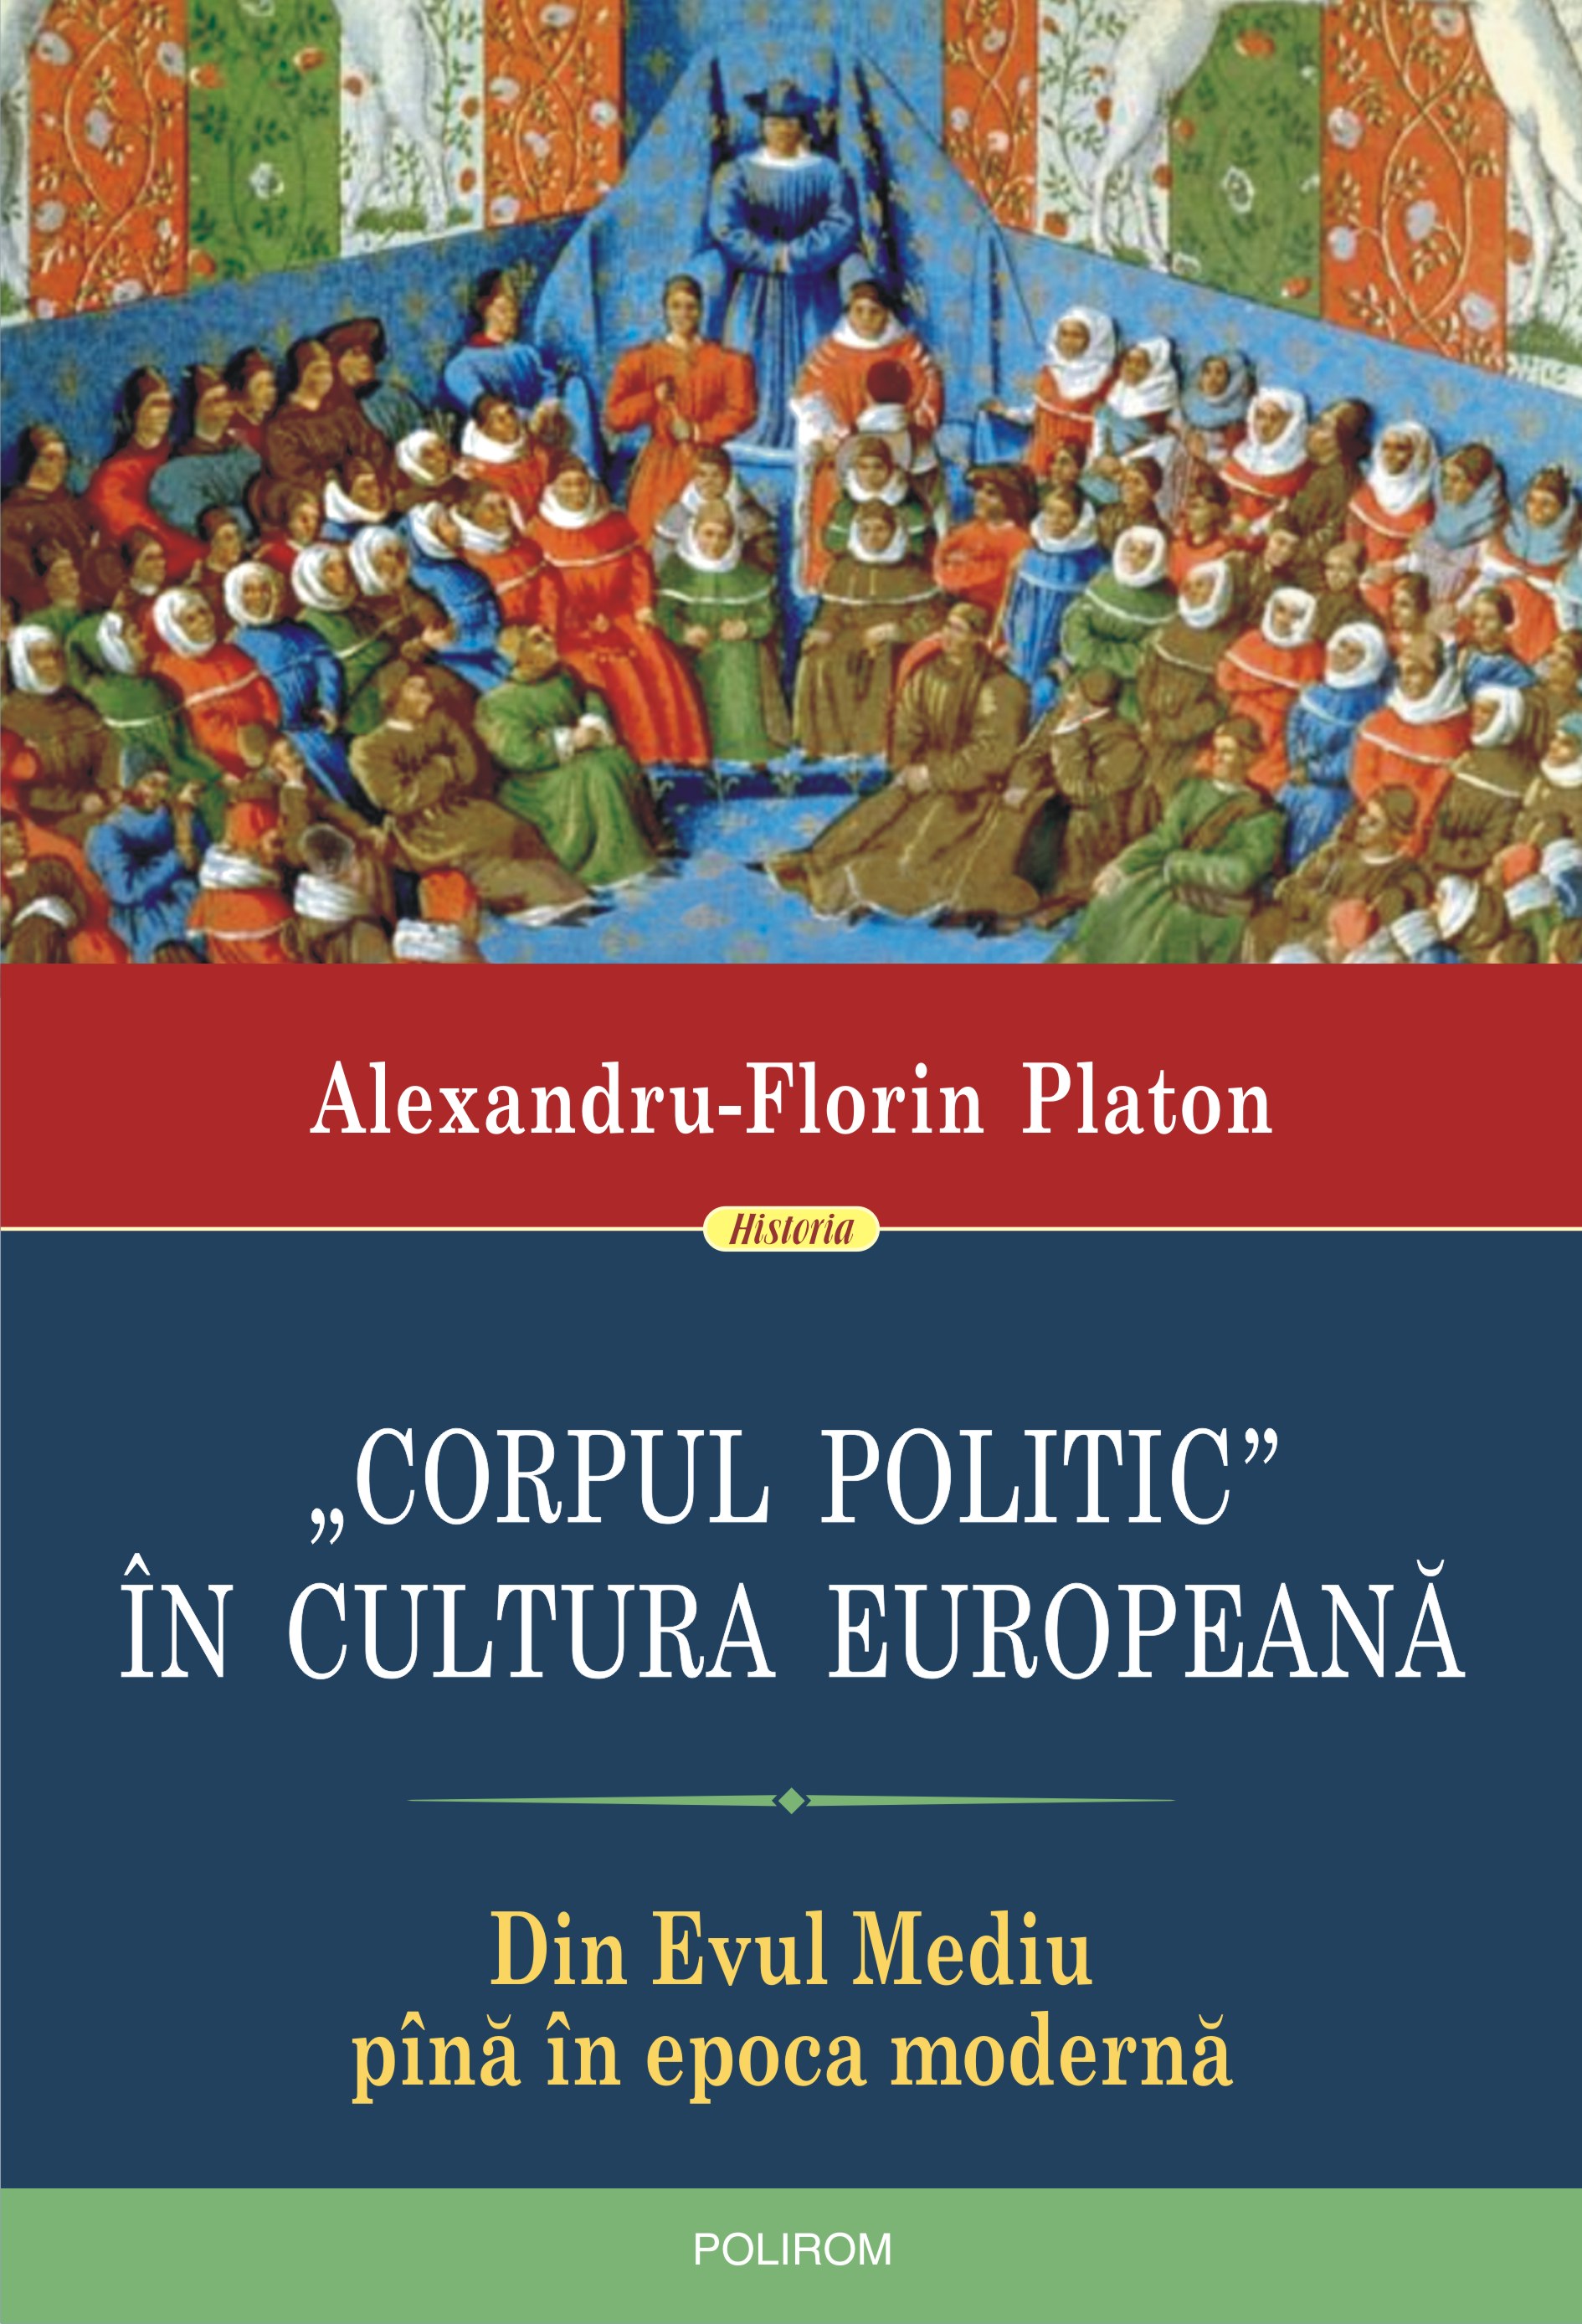 eBook Corpul politic in cultura europeana. Din Evul Mediu pina in epoca moderna - Alexandru-Florin Platon